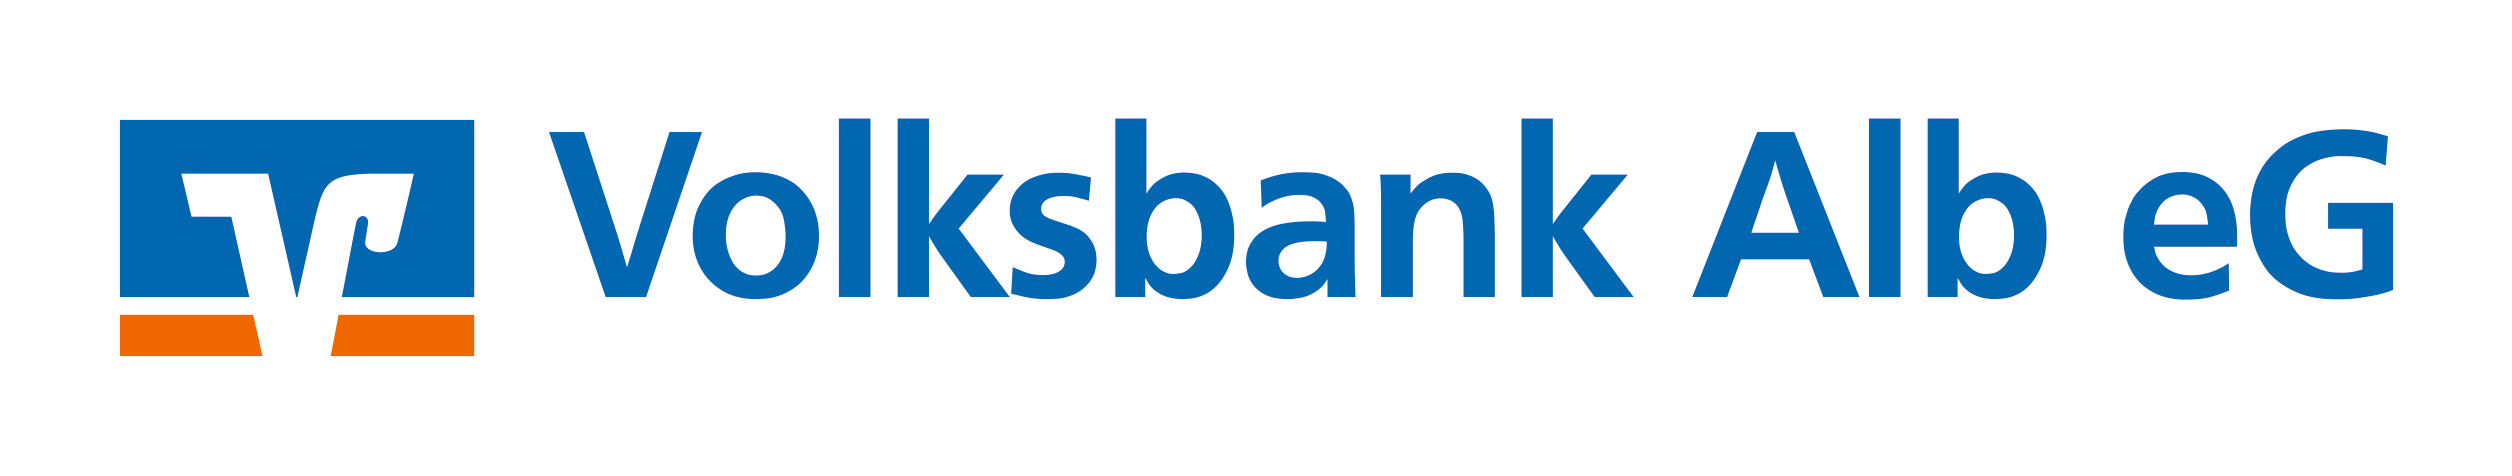 Volksbank Alb eG Logo in Blau und Orange